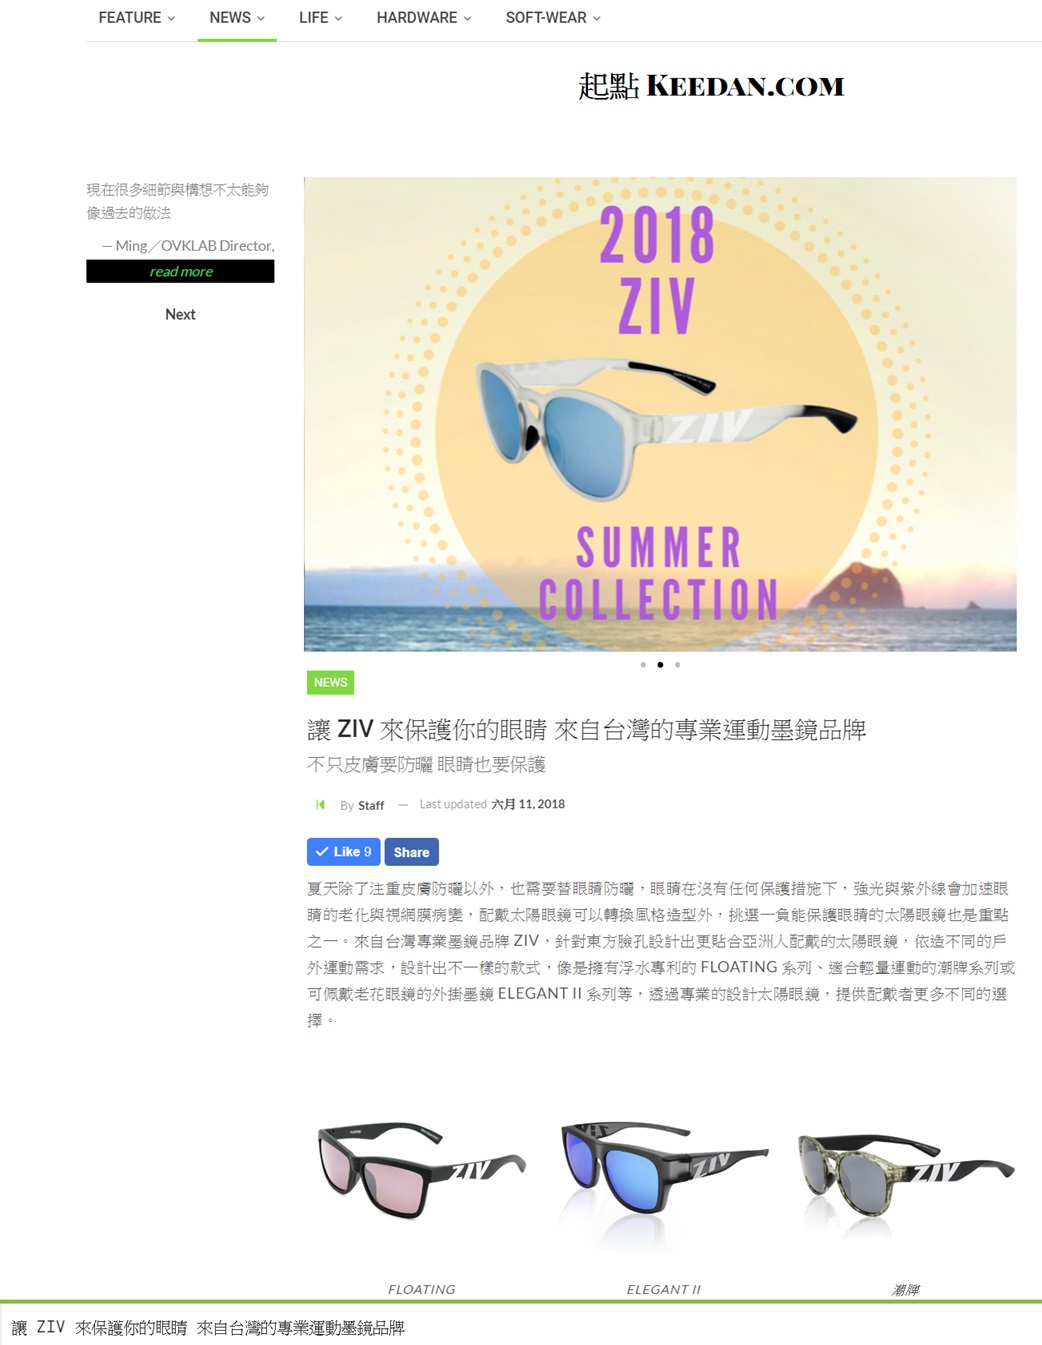 運動眼鏡,太陽眼鏡,ziv運動眼鏡,ziv太陽眼鏡